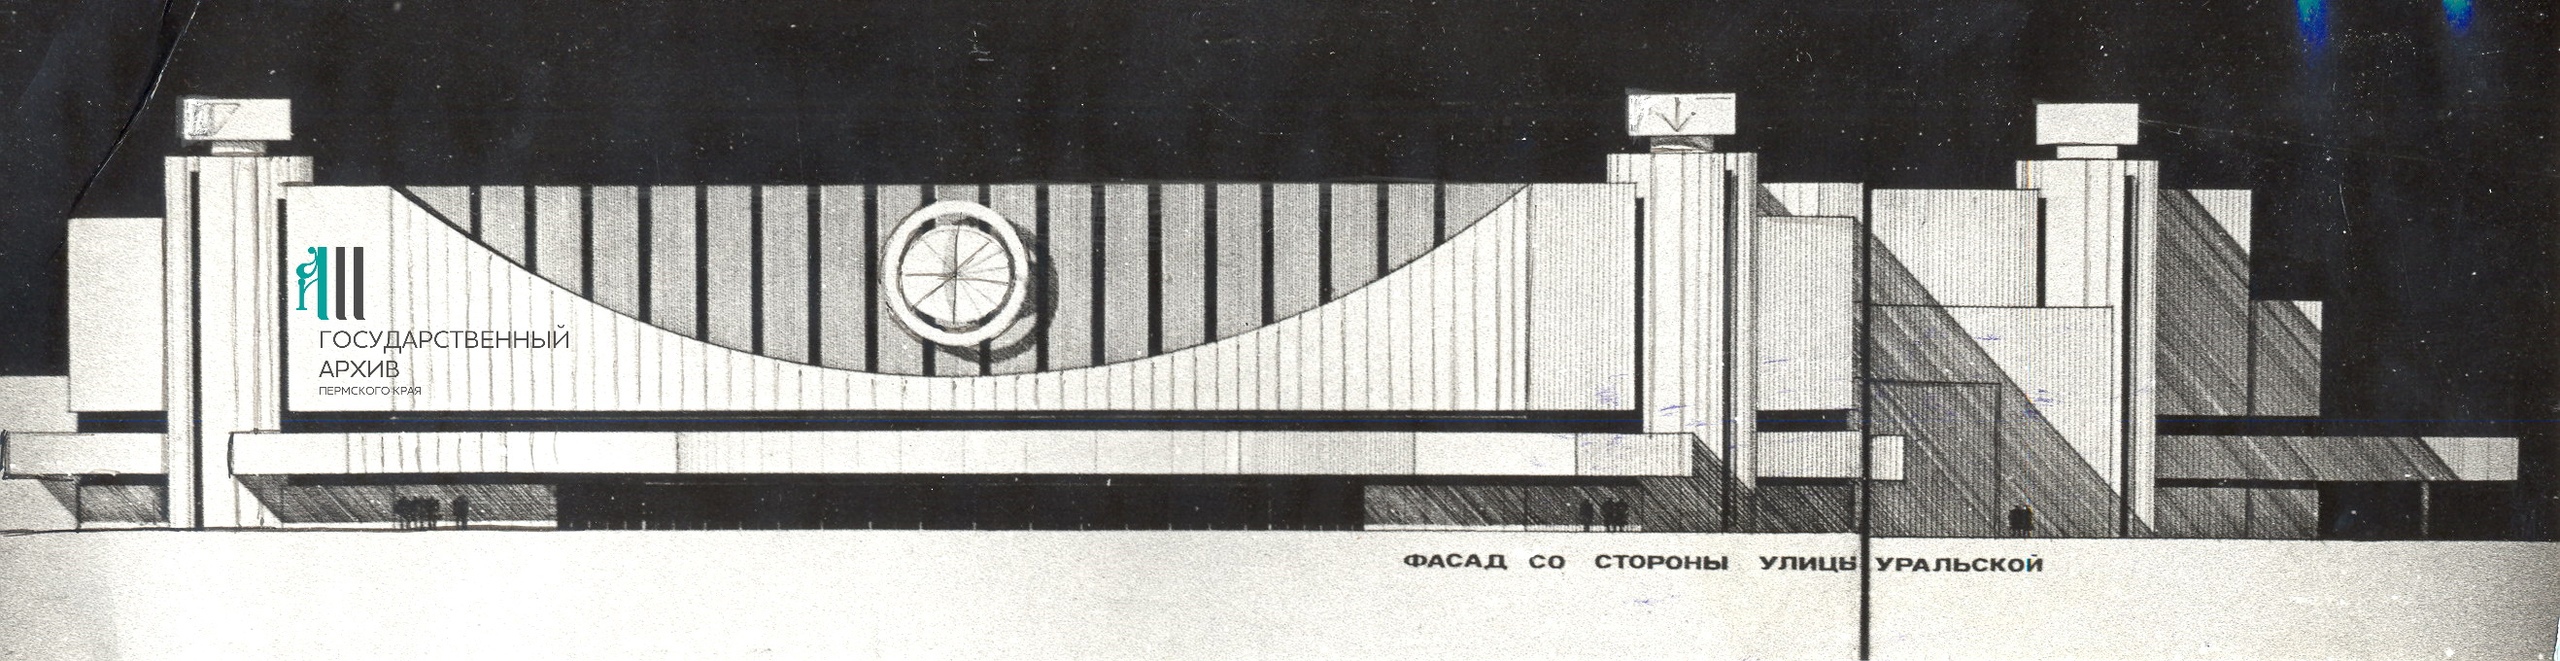 Проект фасада УДС «Молот». Версия 1982 года